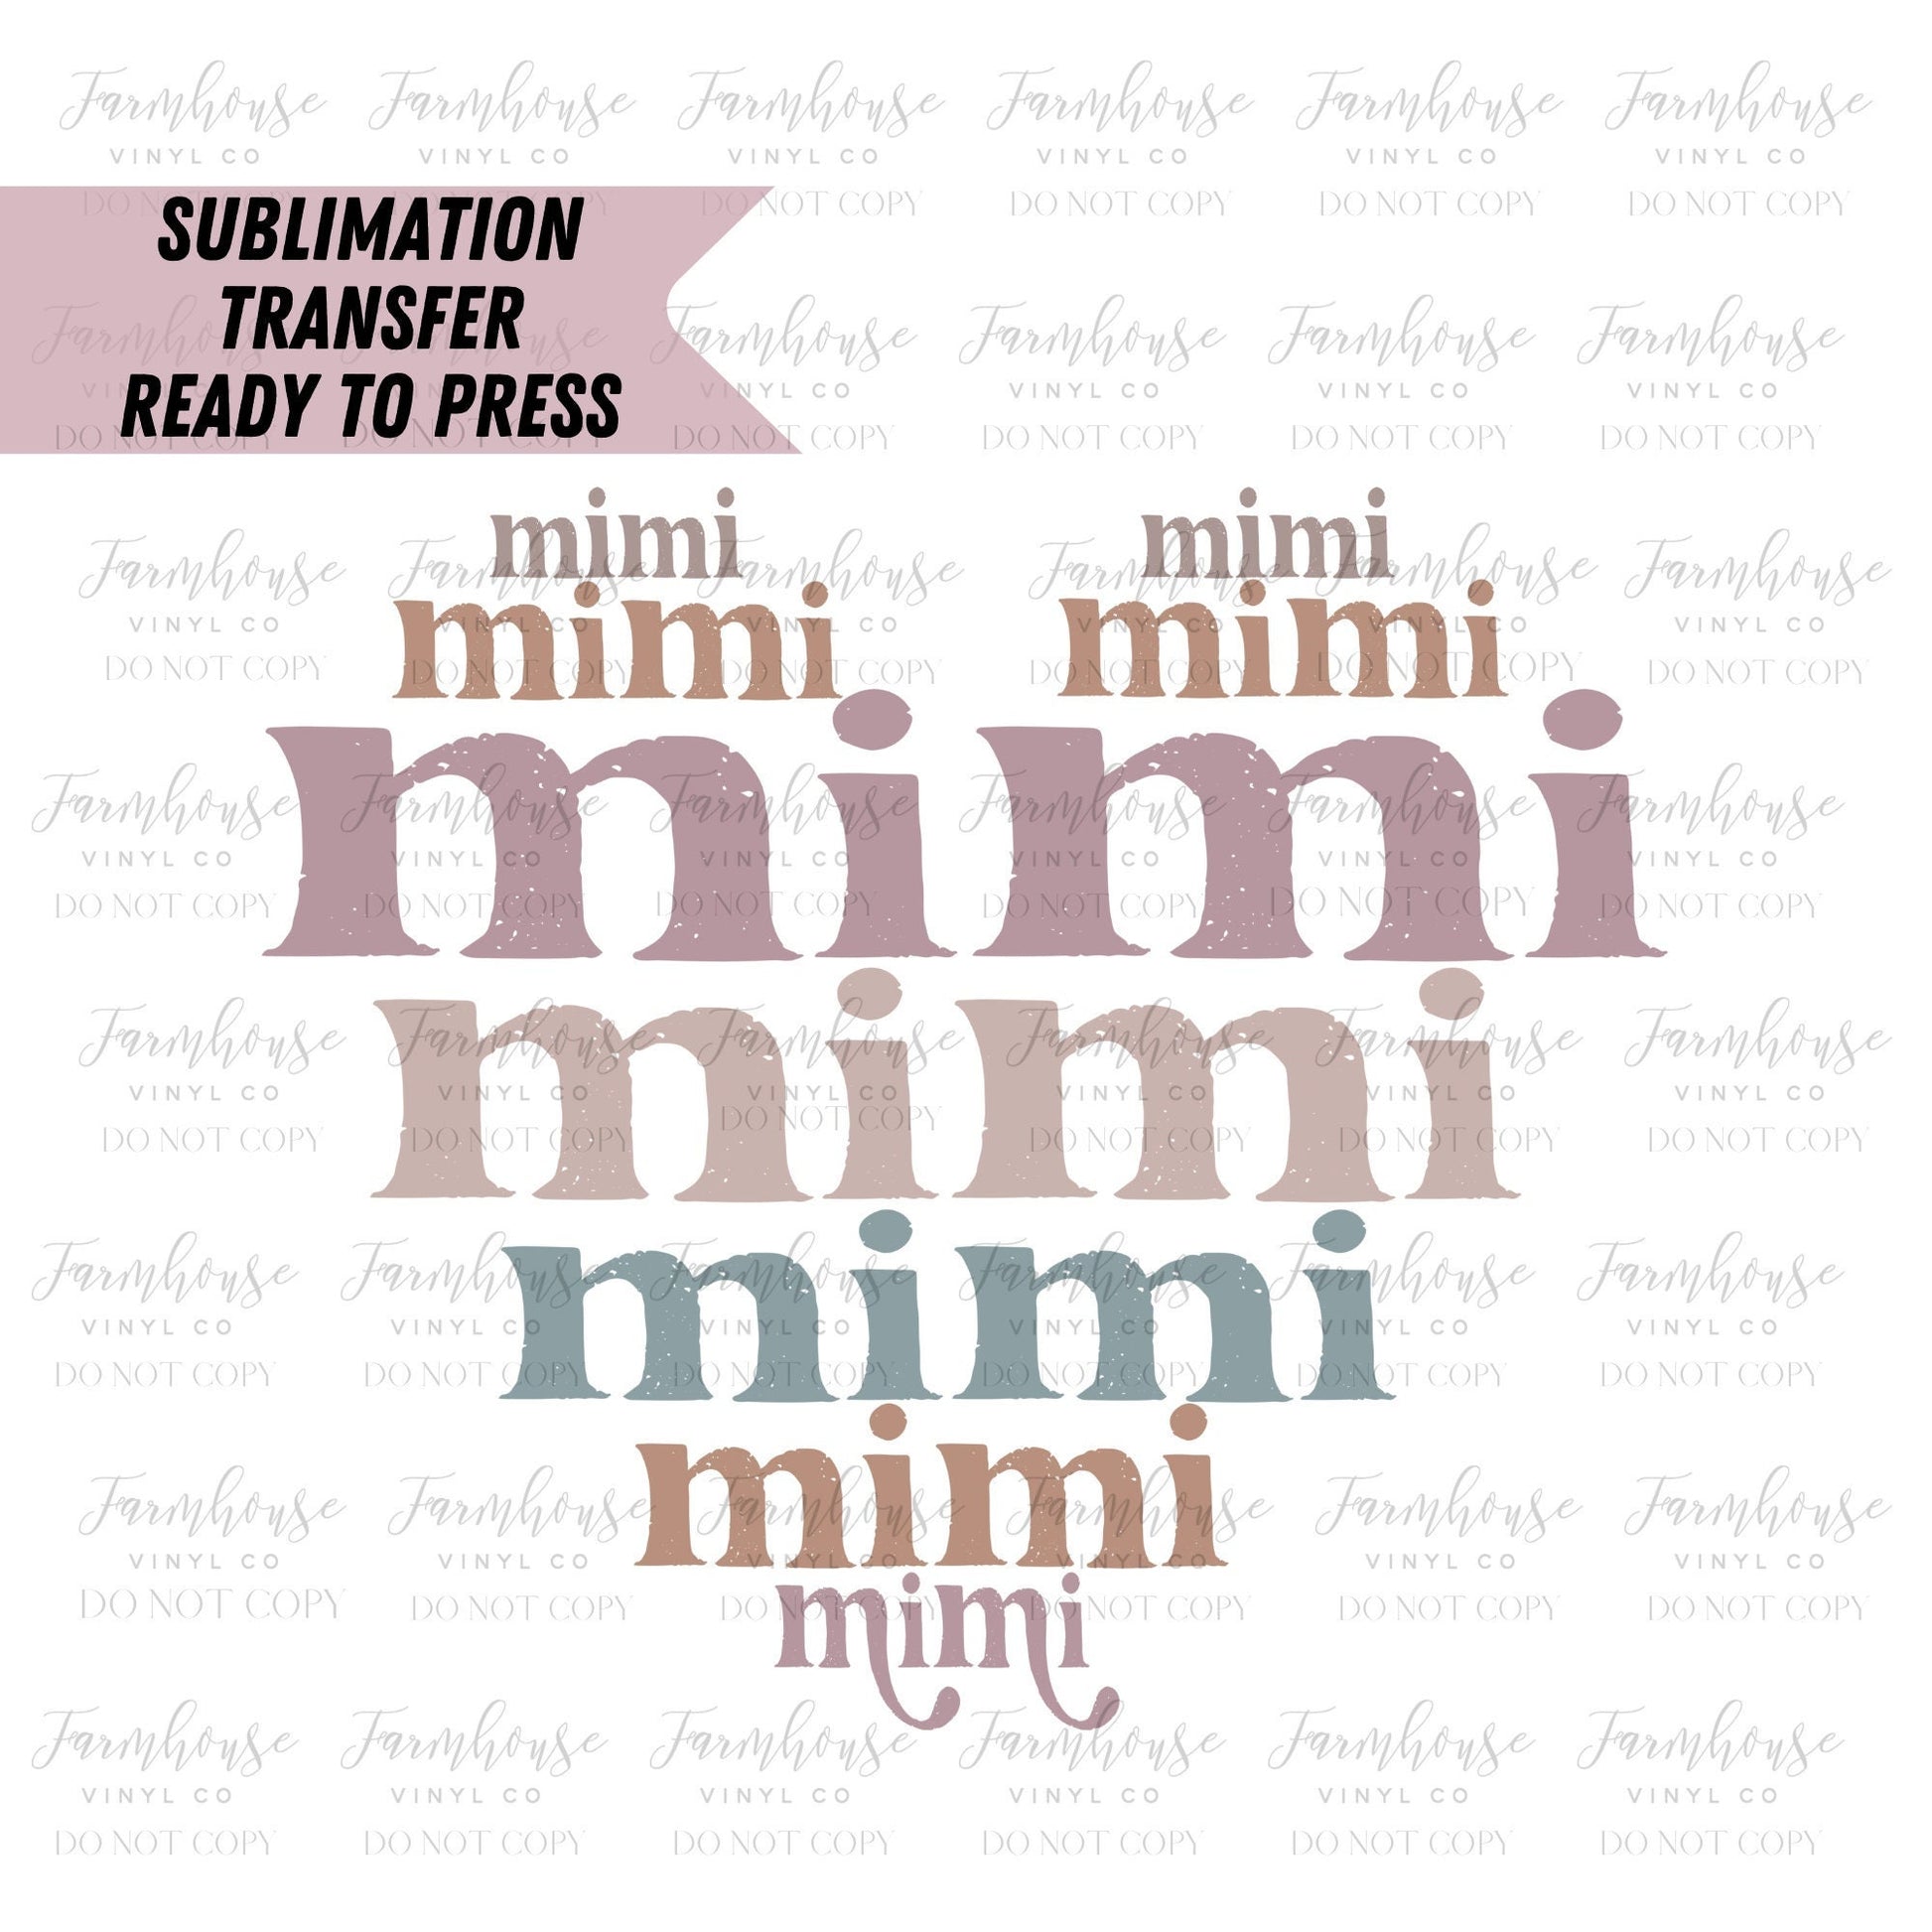 Mimi Heart Retro Font  Ready to Press Sublimation Transfer - Farmhouse Vinyl Co